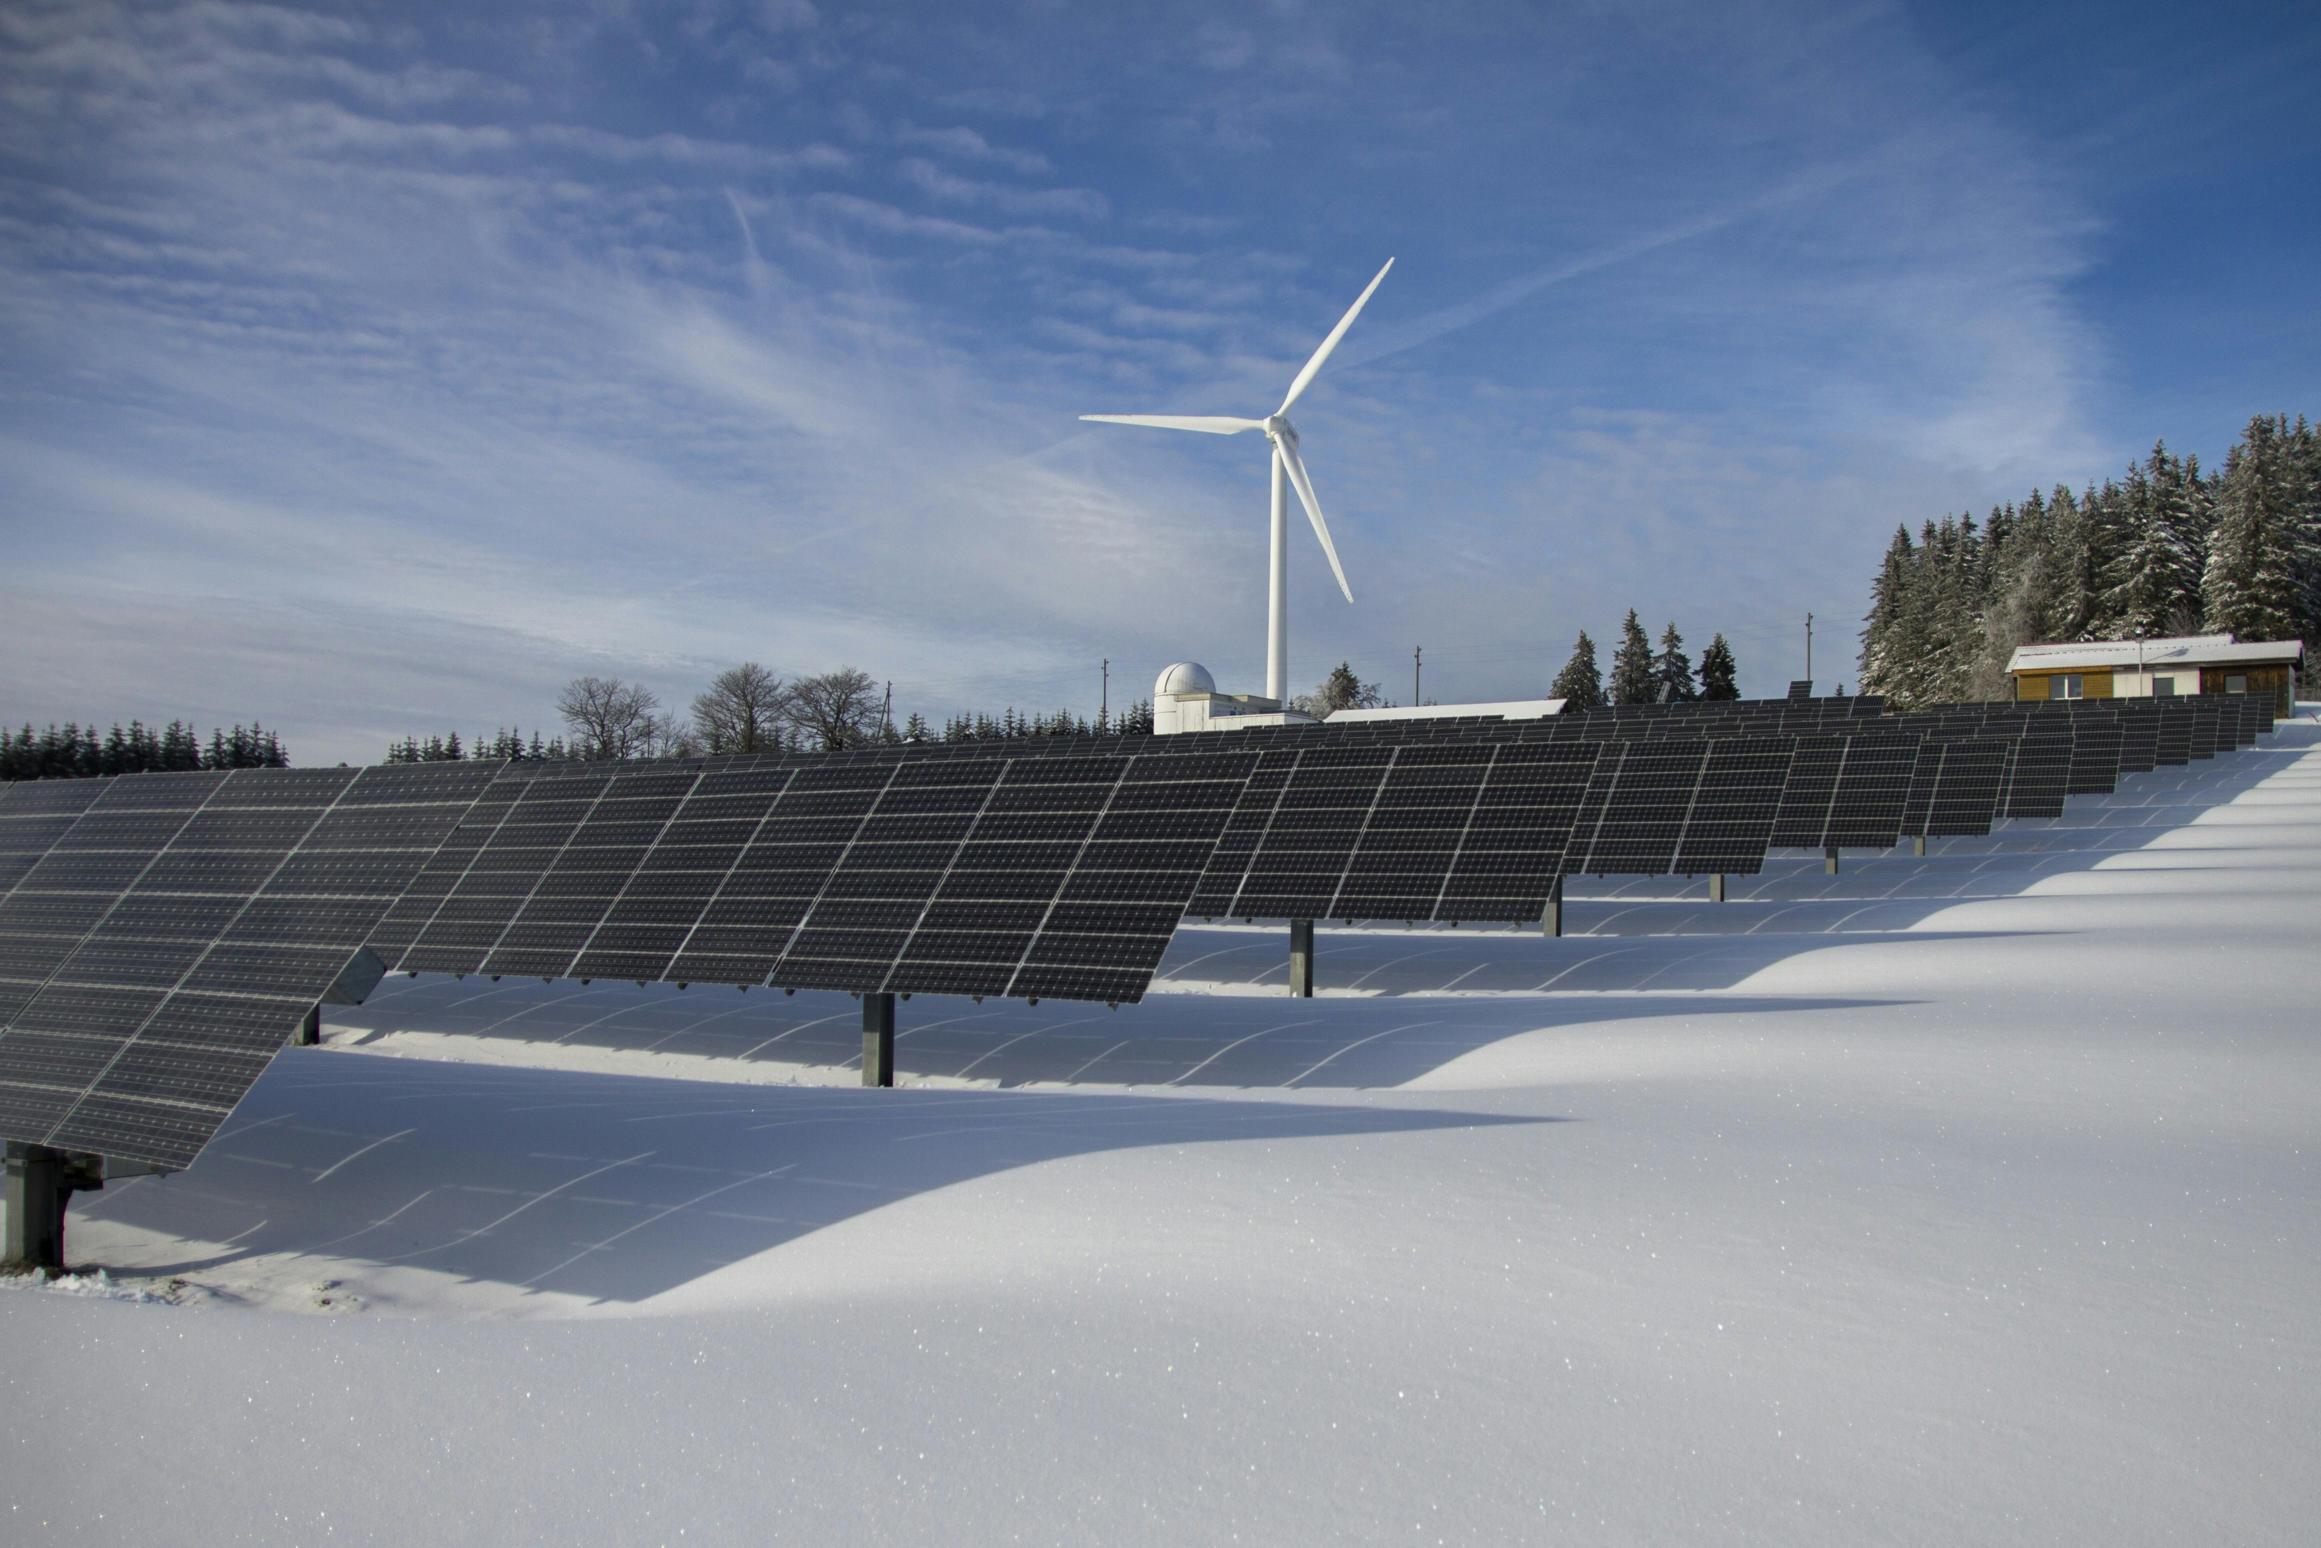 Potenzialità energetiche e sostenibilità ambientale dei pannelli fotovoltaici integrati